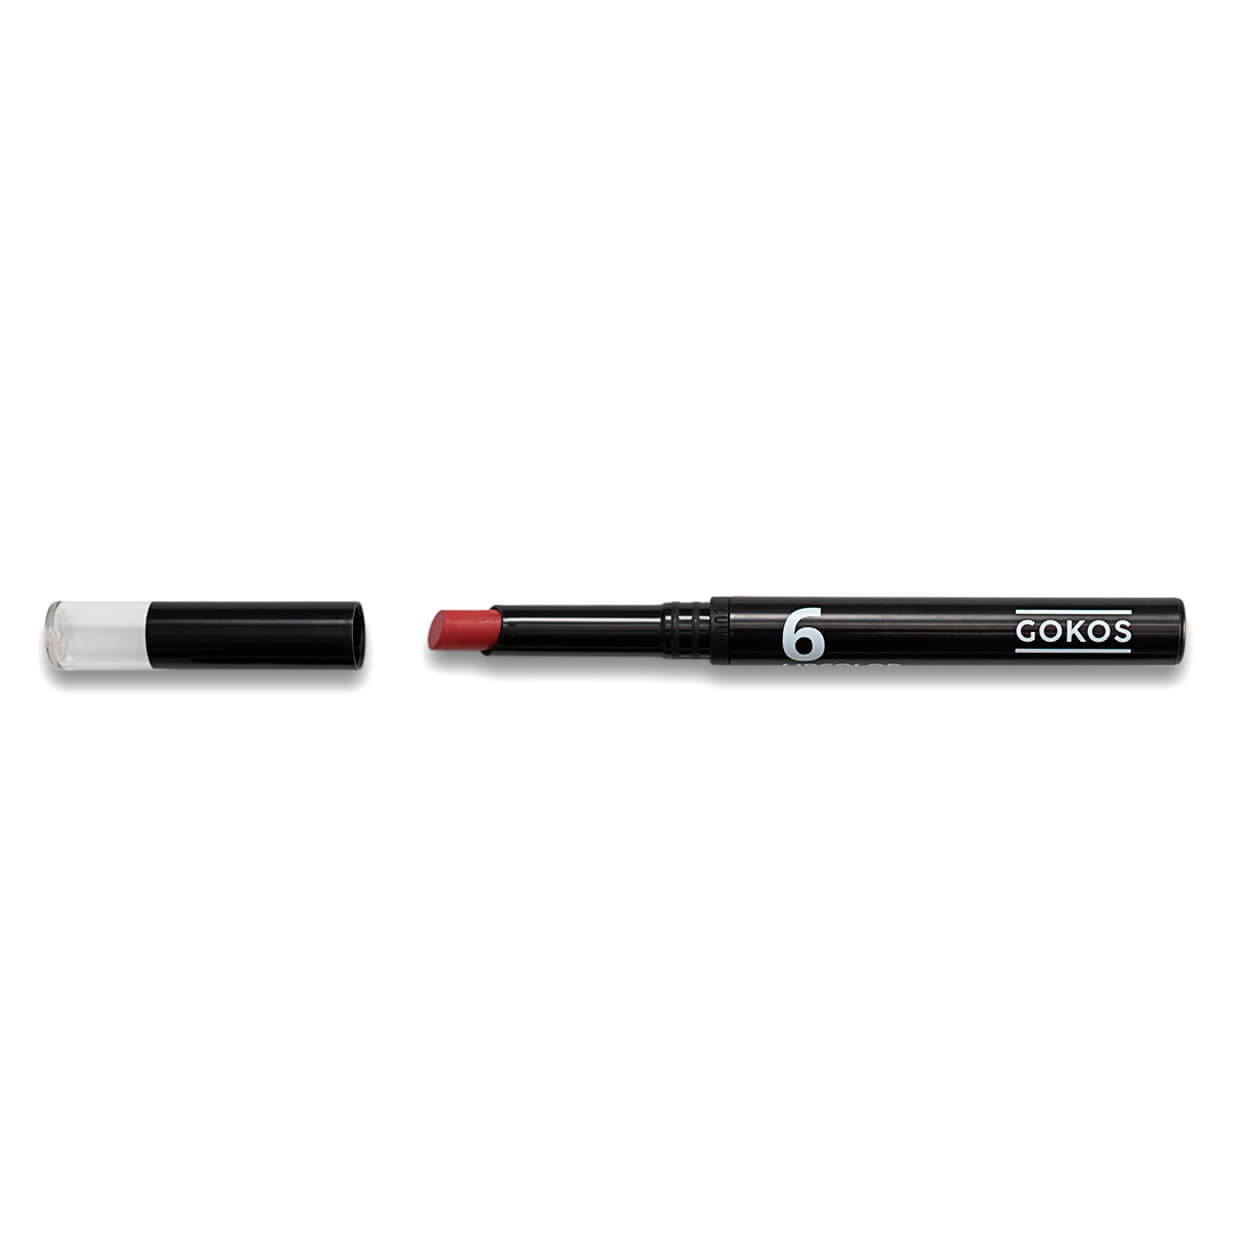 GOKOS - Beauty to go - Indie-Makeup-Brand mit Stiften 83